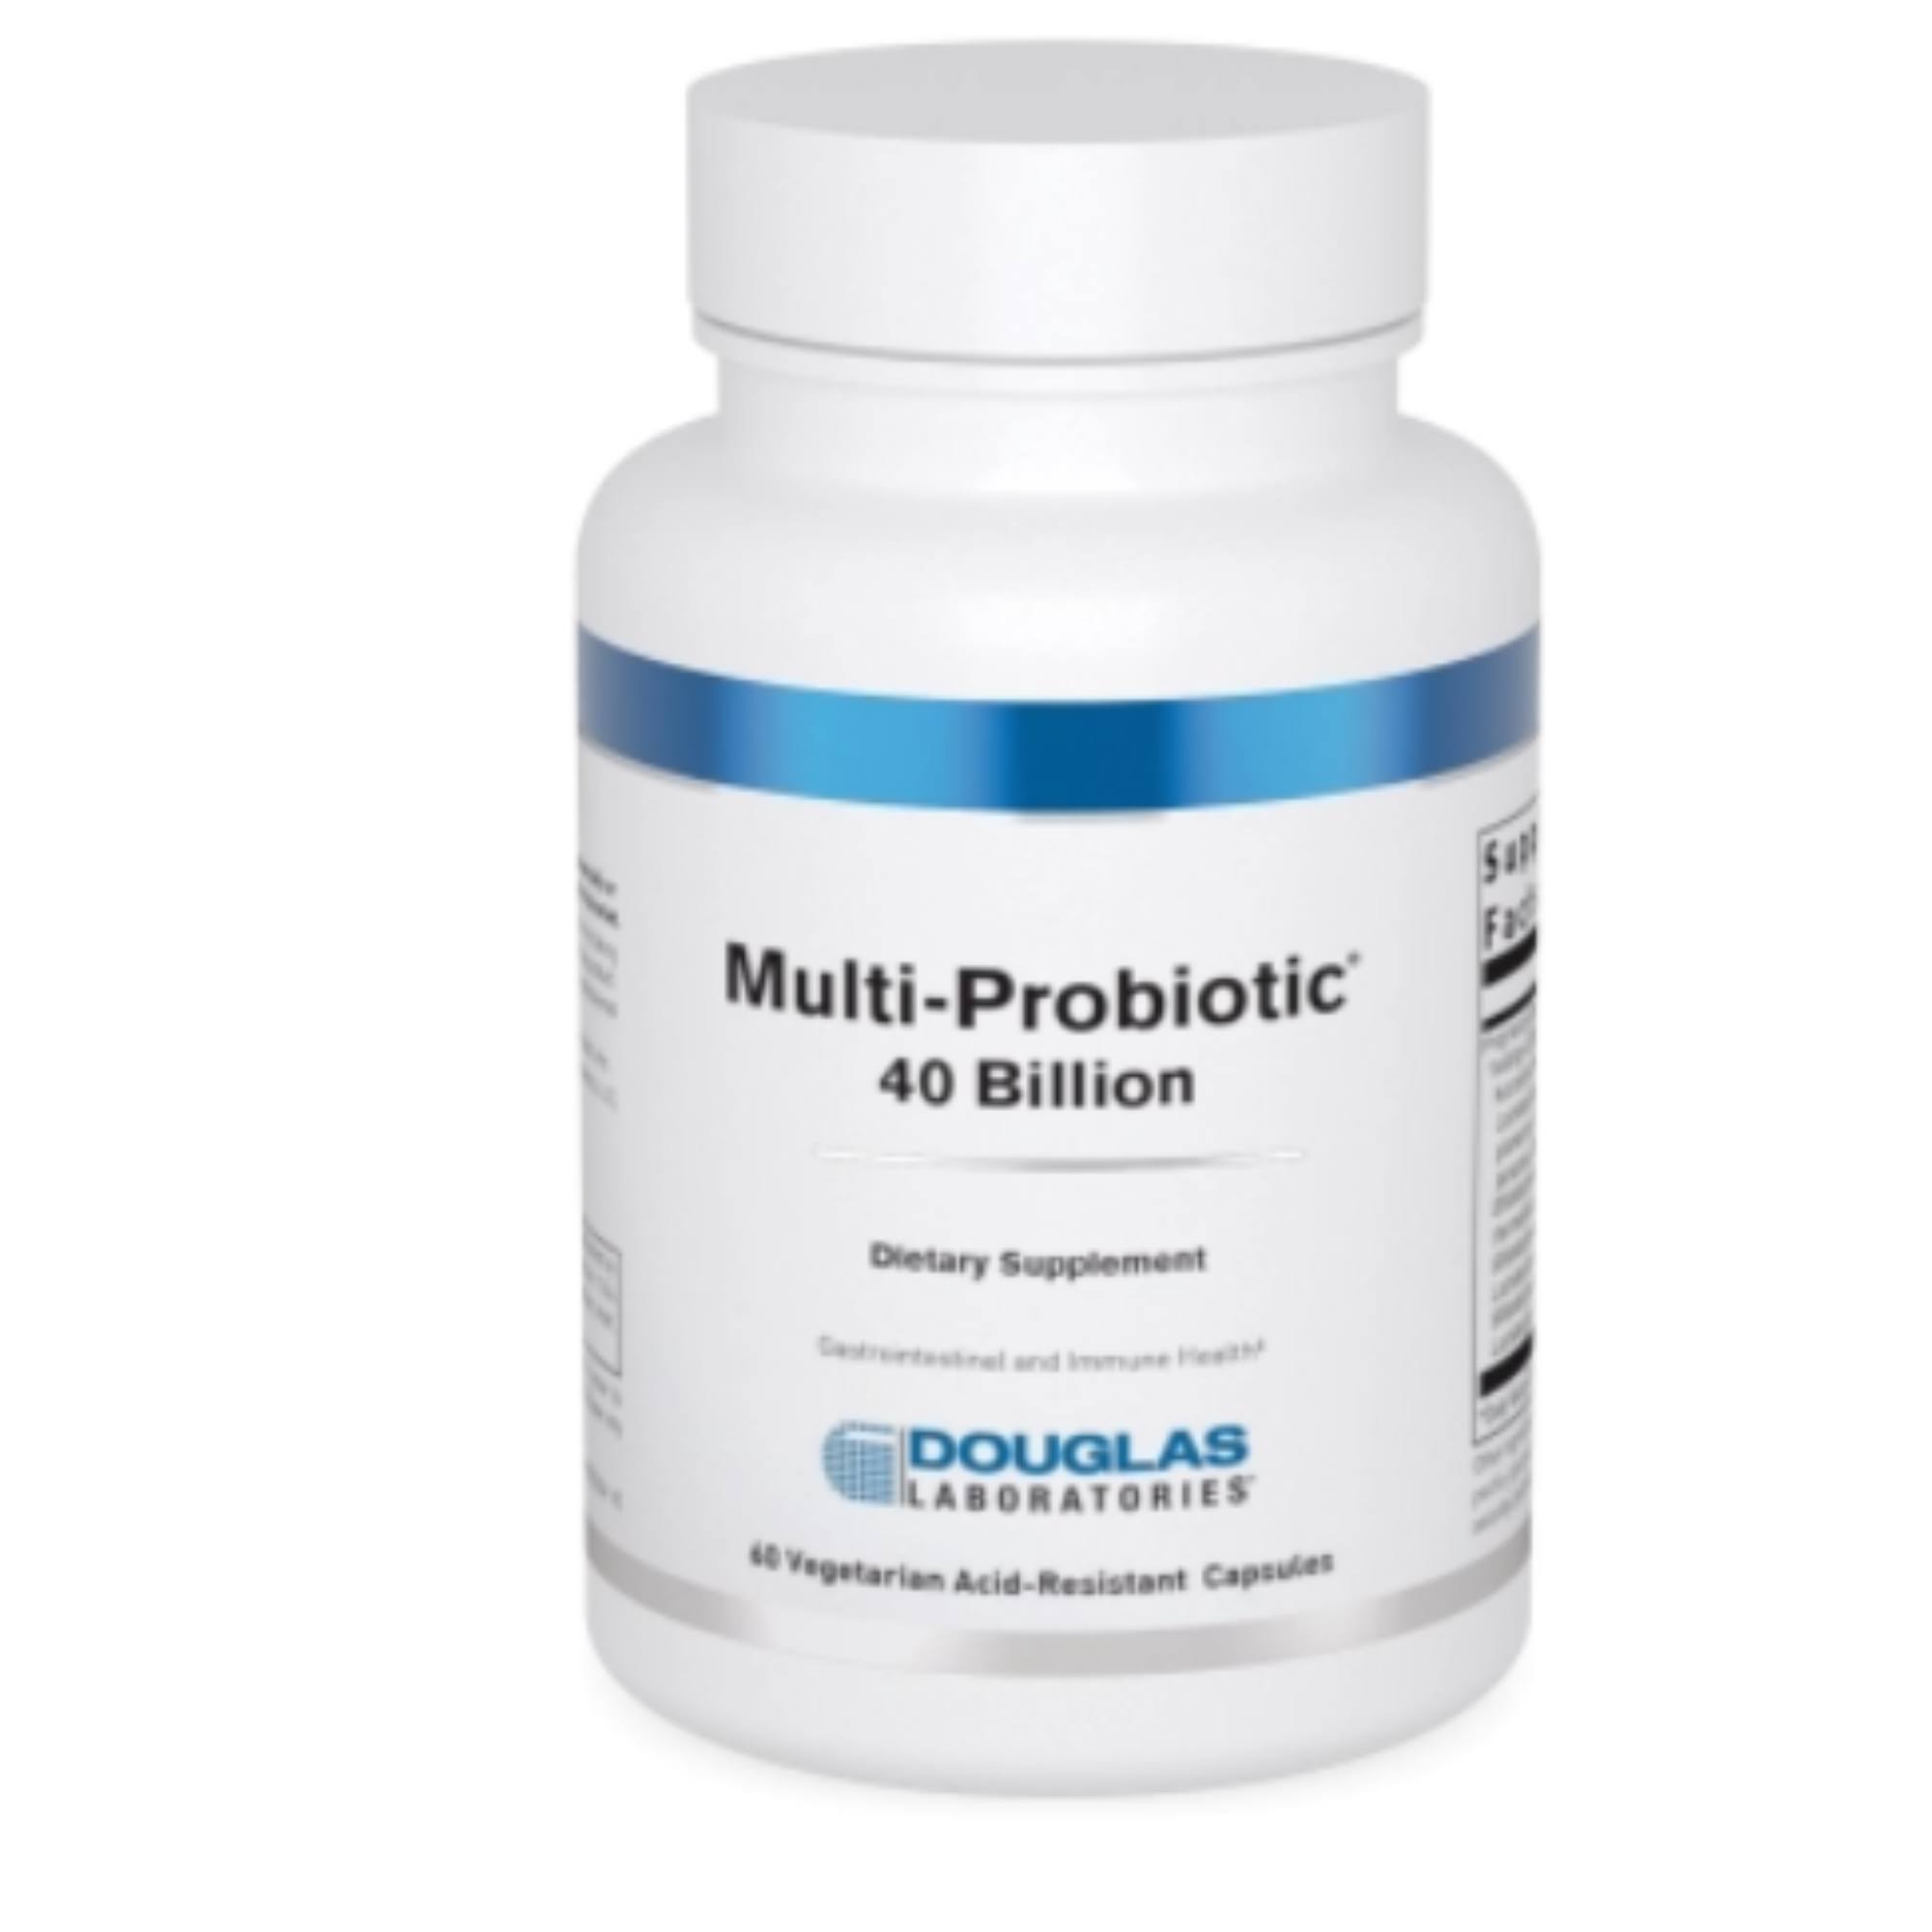 Douglas Laboratories, Multi-Probiotic 40 Billion, 60 Capsules